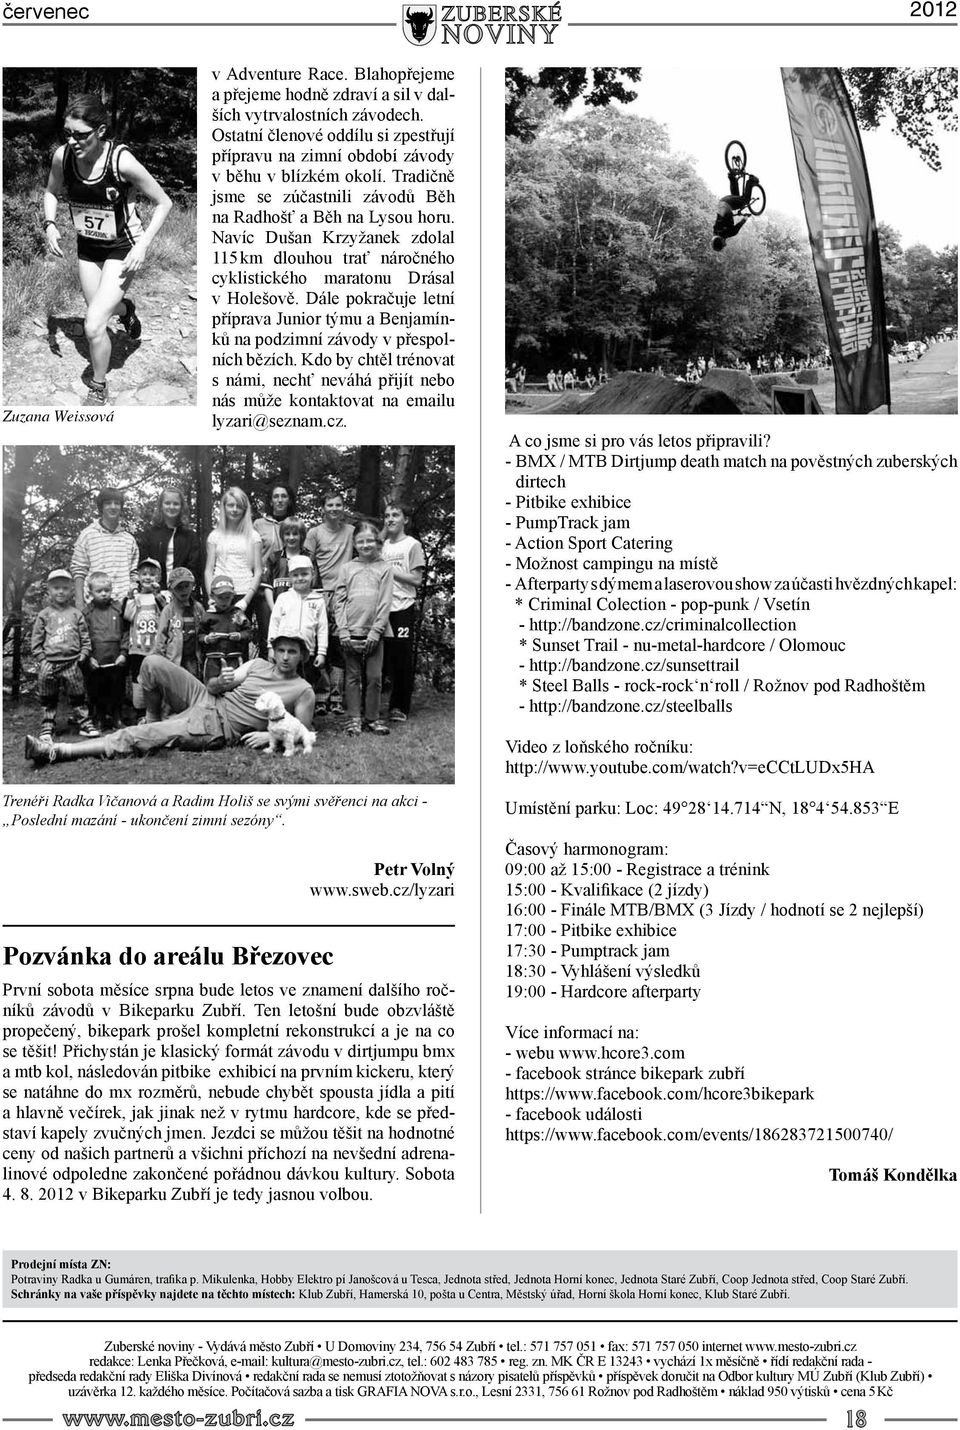 Navíc Dušan Krzyžanek zdolal 115 km dlouhou trať náročného cyklistického maratonu Drásal v Holešově. Dále pokračuje letní příprava Junior týmu a Benjamínků na podzimní závody v přespolních bězích.